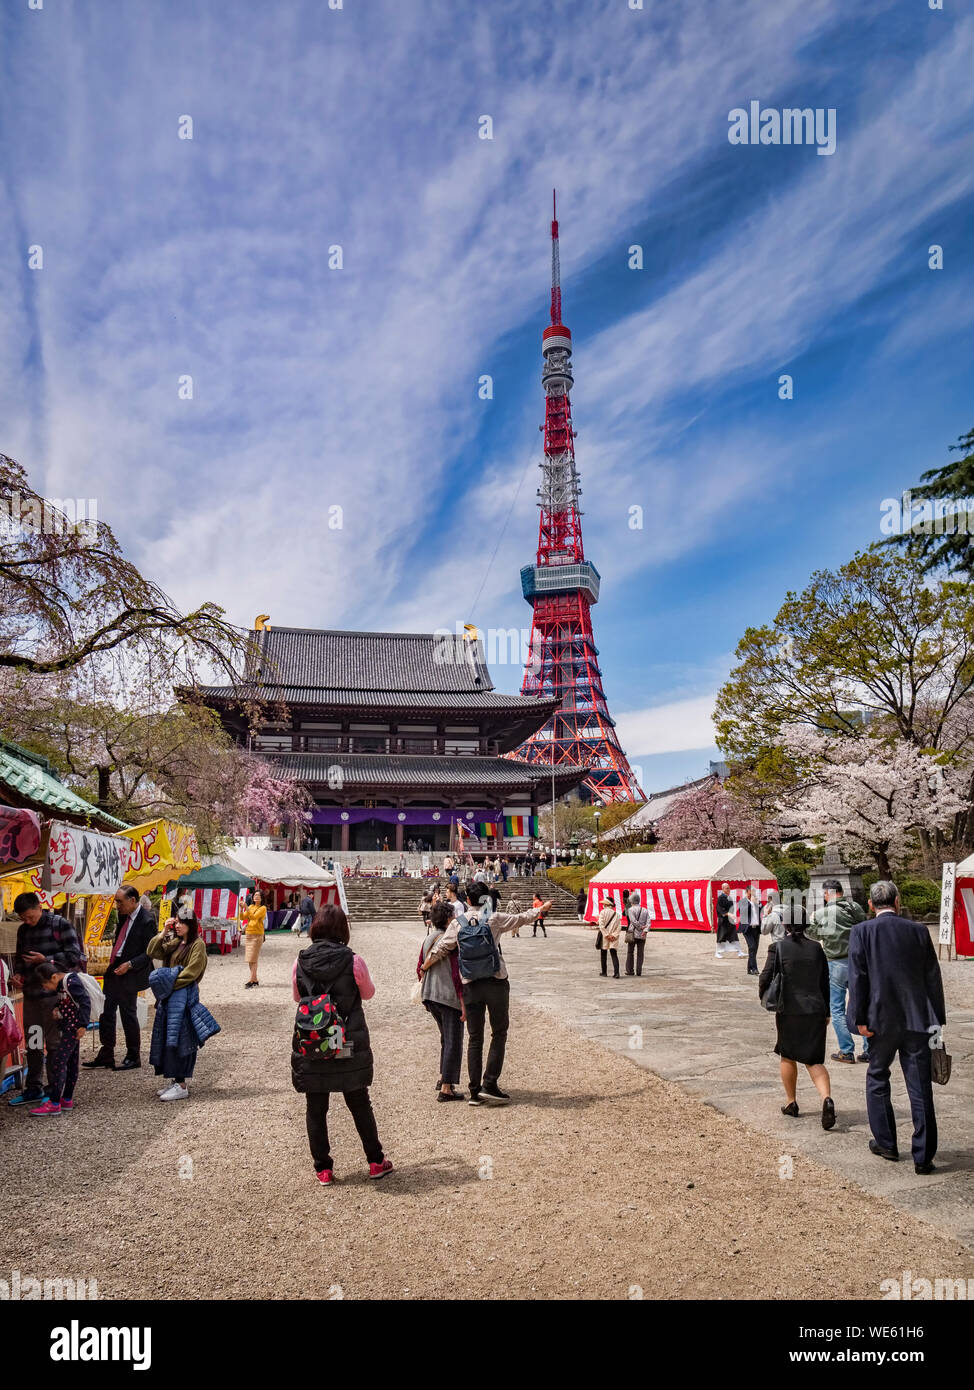 5 Aprile 2019: Tokyo, Giappone - i visitatori a Zozoji tempio buddista in fiore di ciliegio stagione, con la Torre di Tokyo. Foto Stock